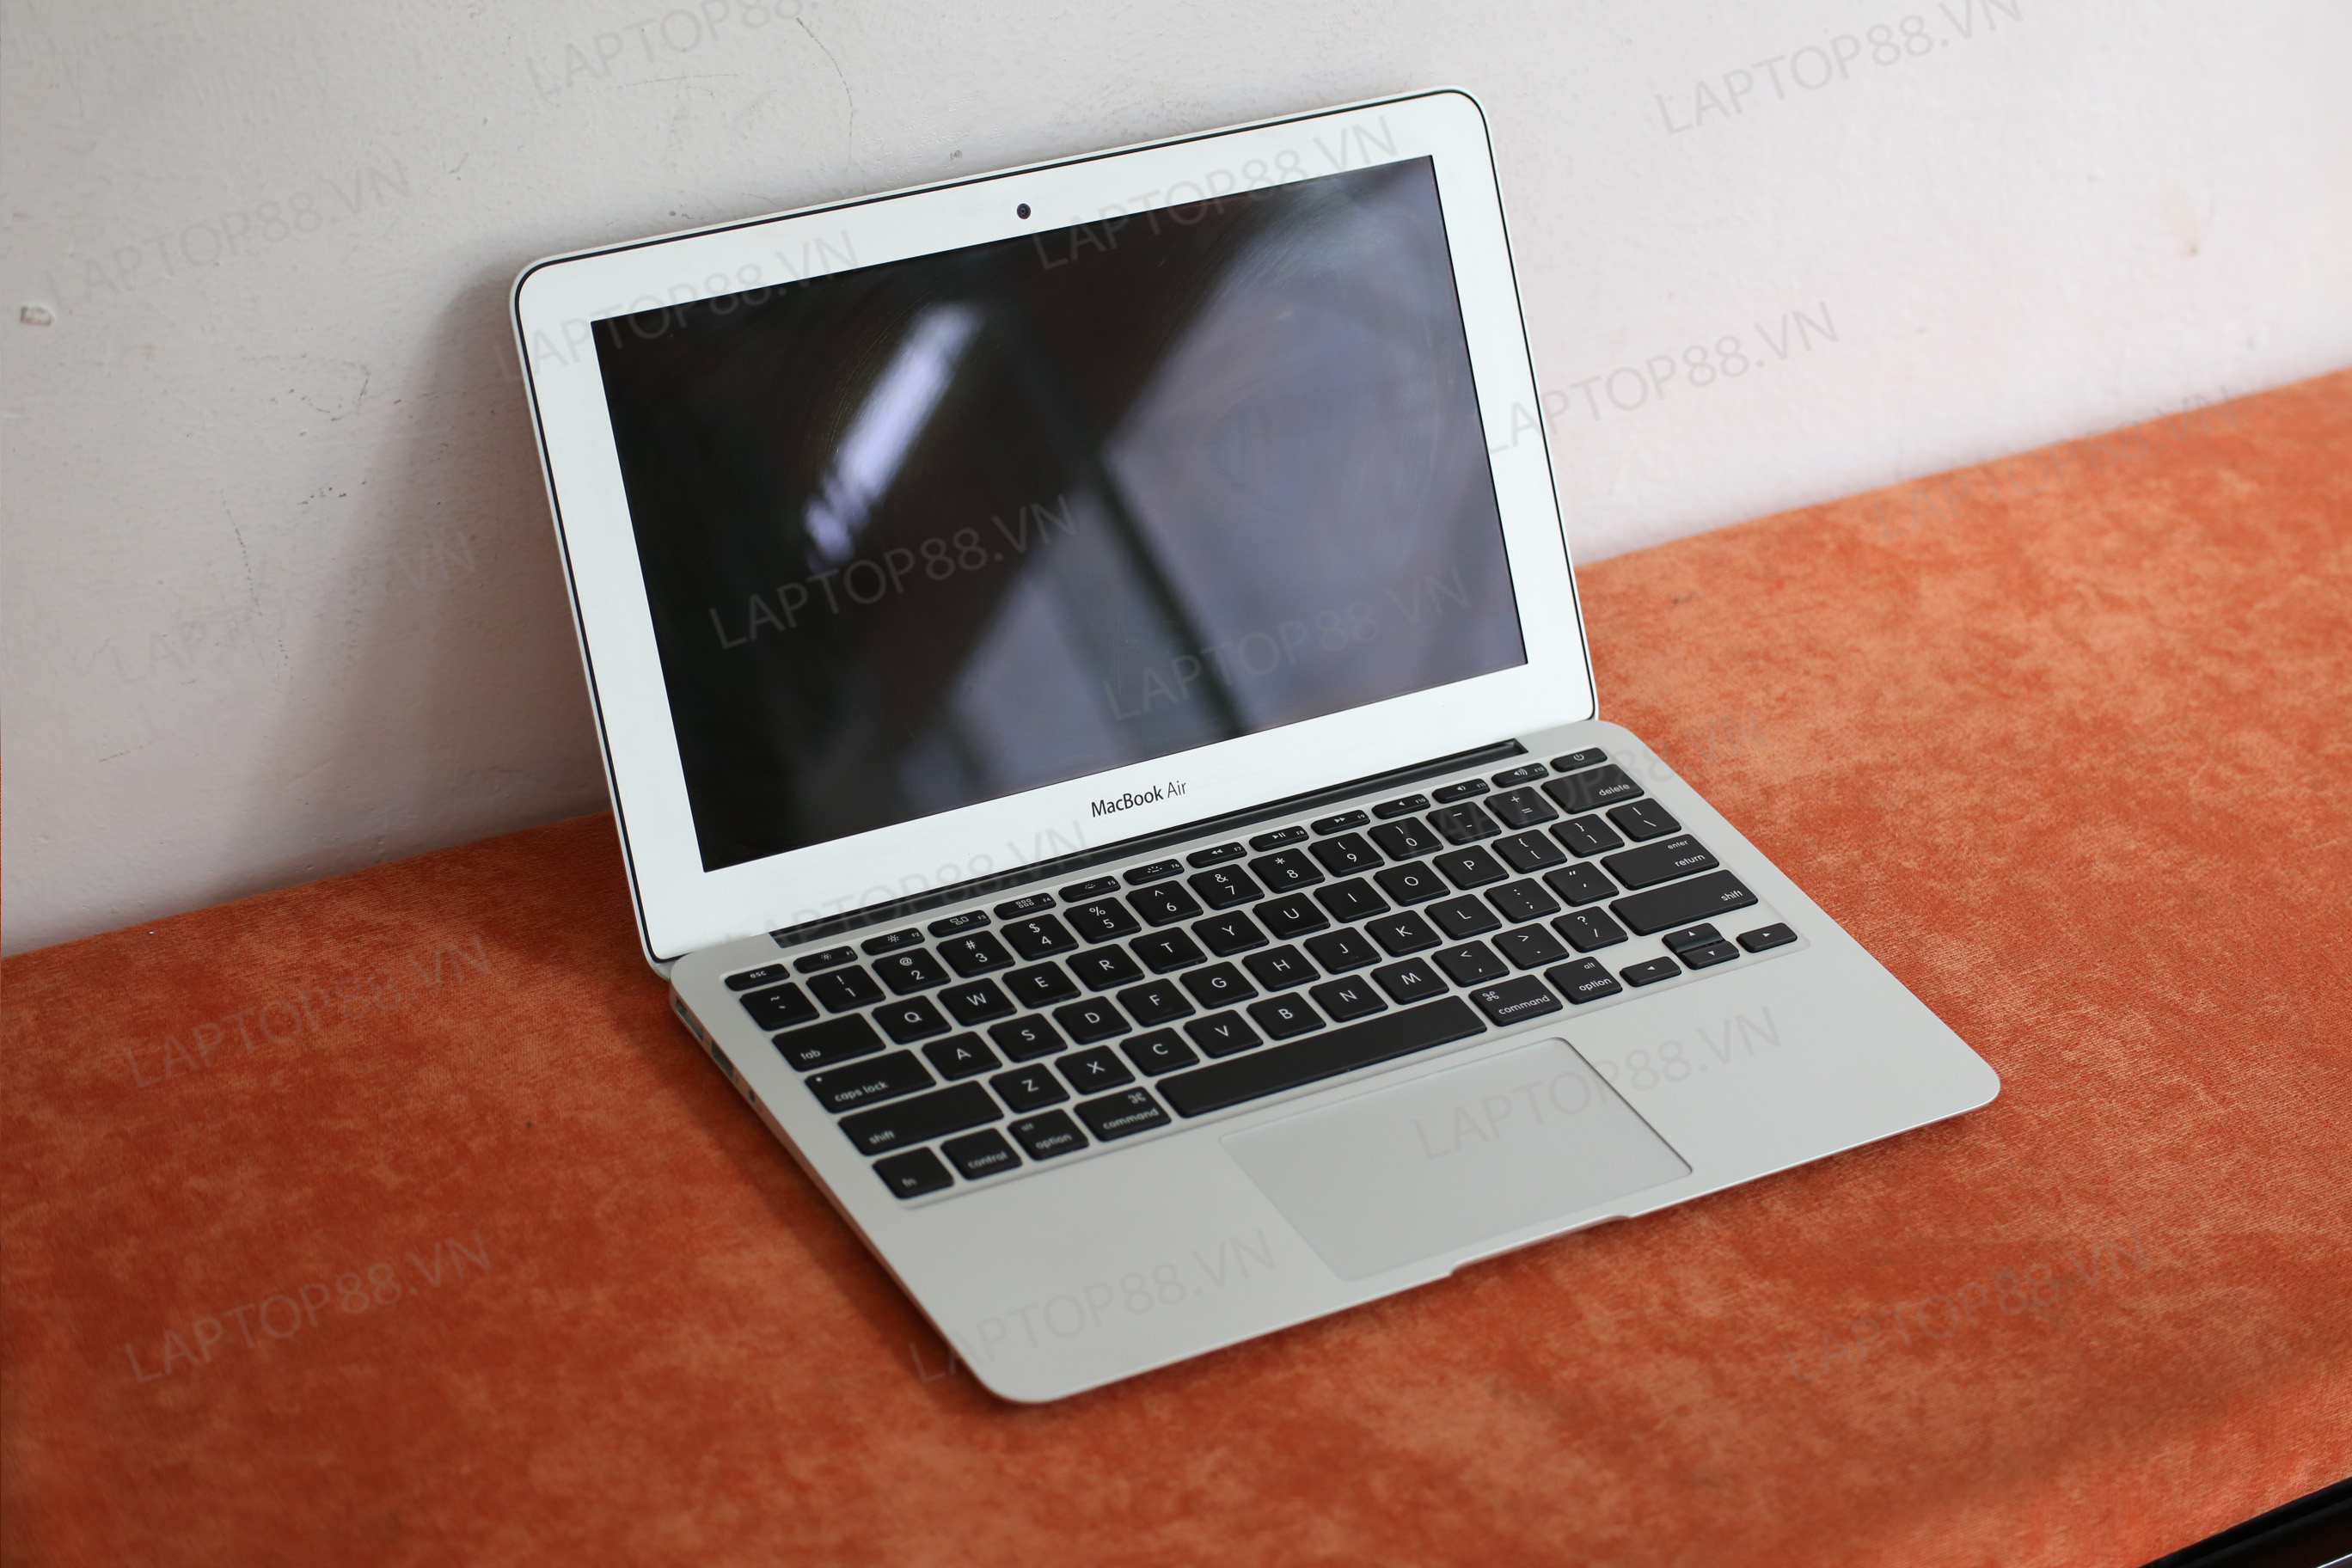 MacBook air 2013 core i7 500GB SSD